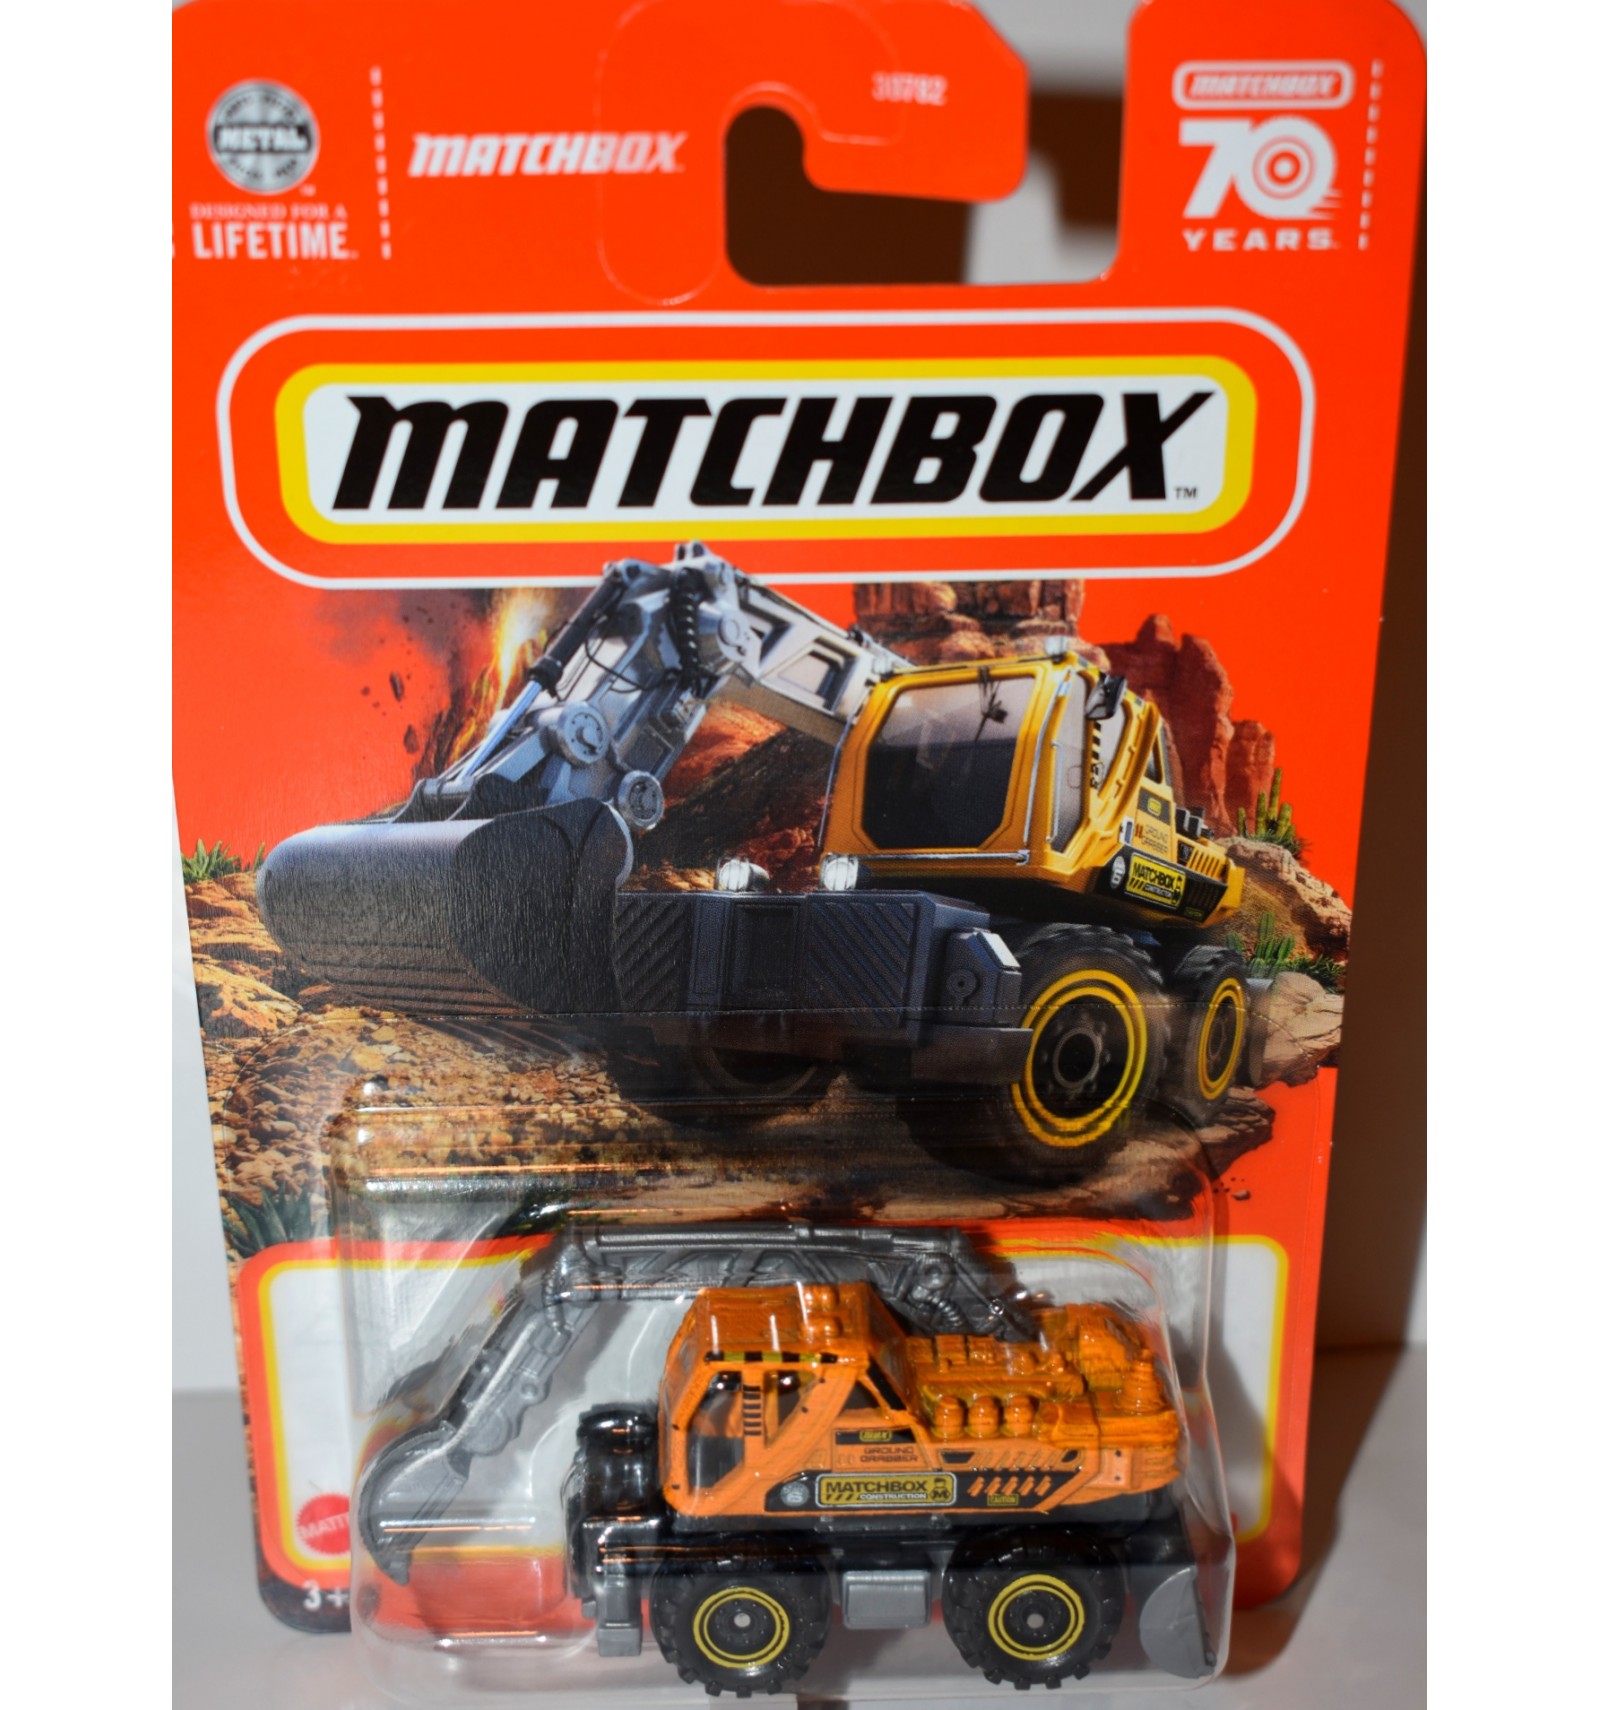 Matchbox - Ground Grabber Front Digger